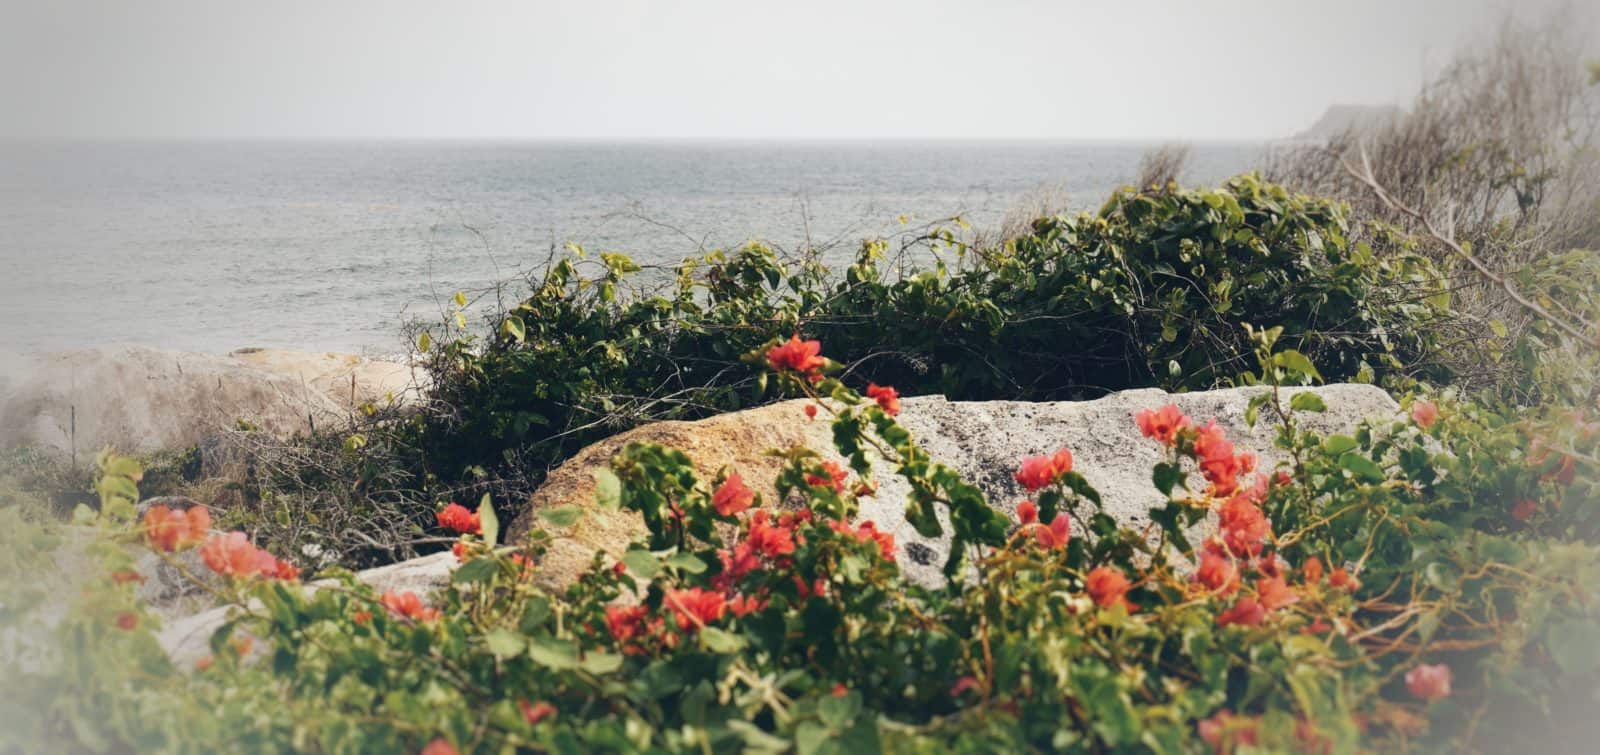 Flowers by the Ocean